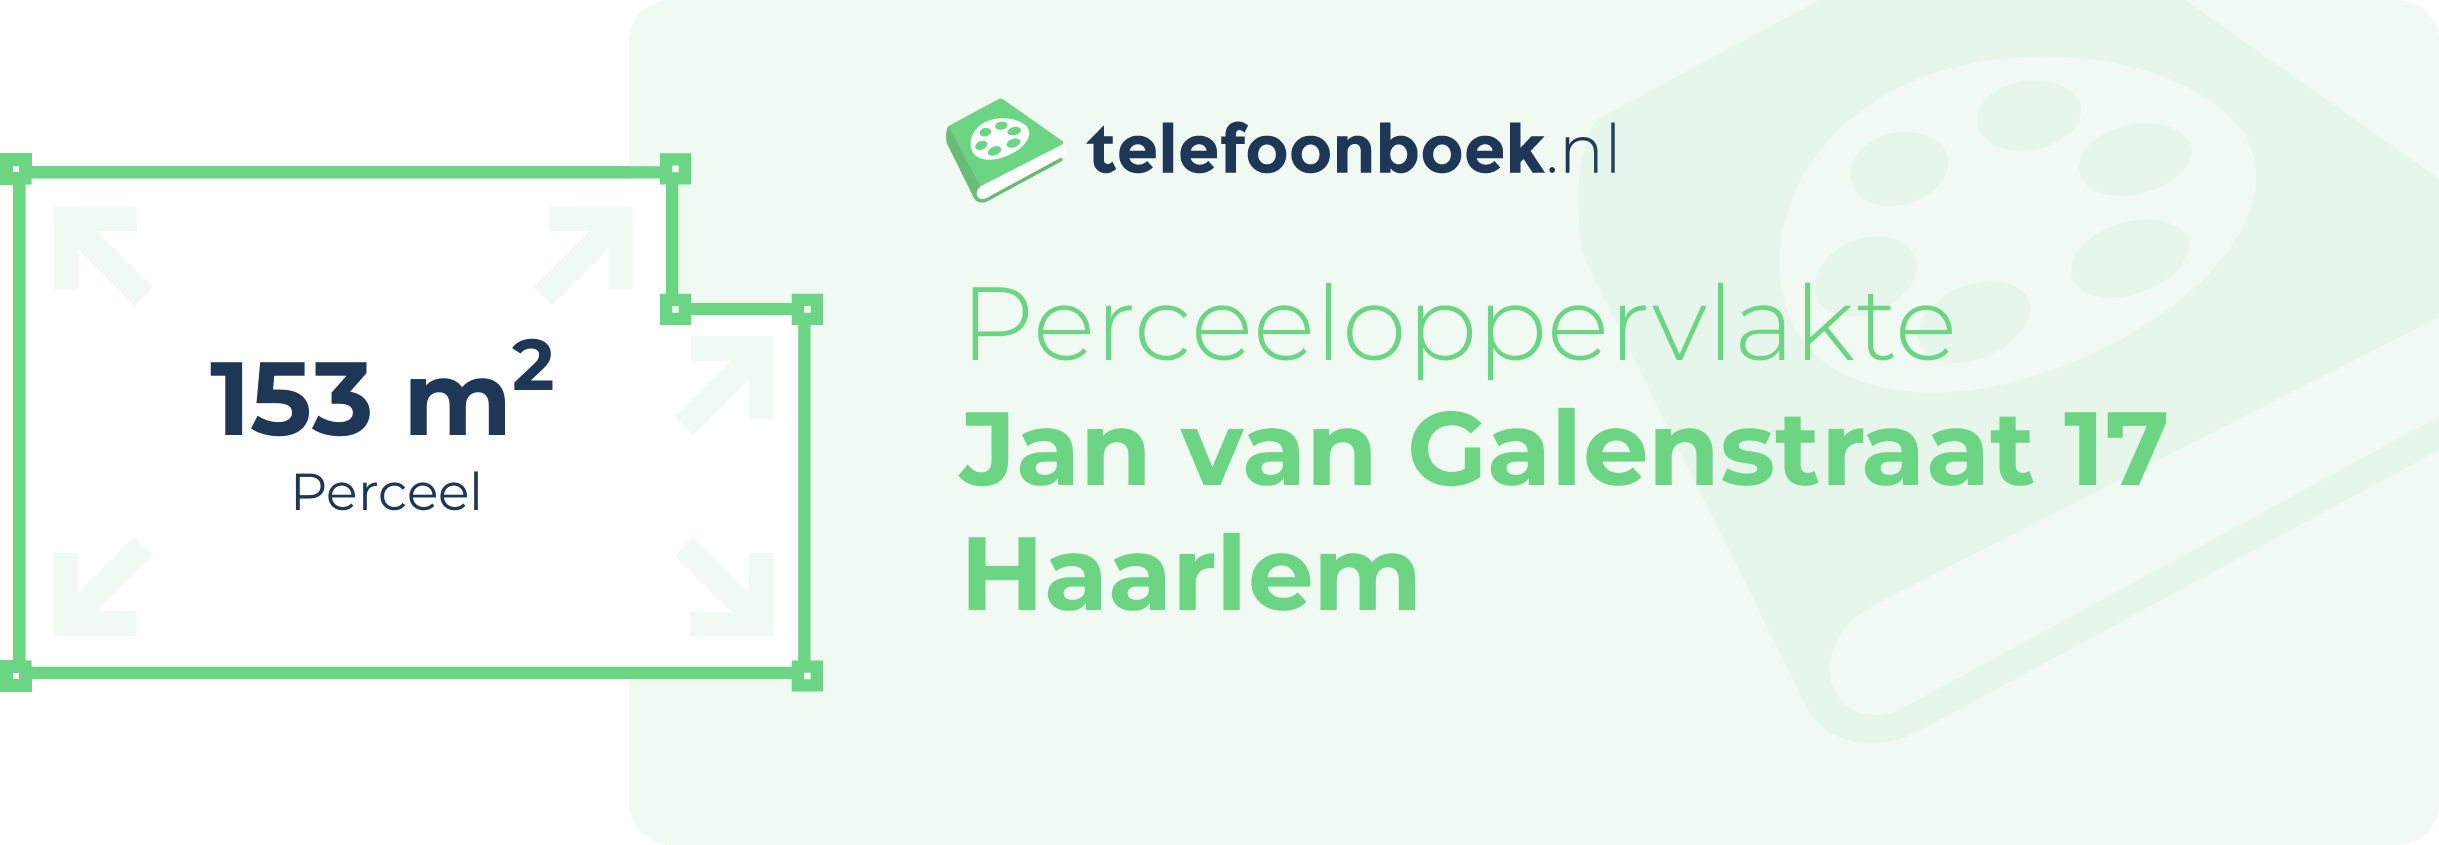 Perceeloppervlakte Jan Van Galenstraat 17 Haarlem